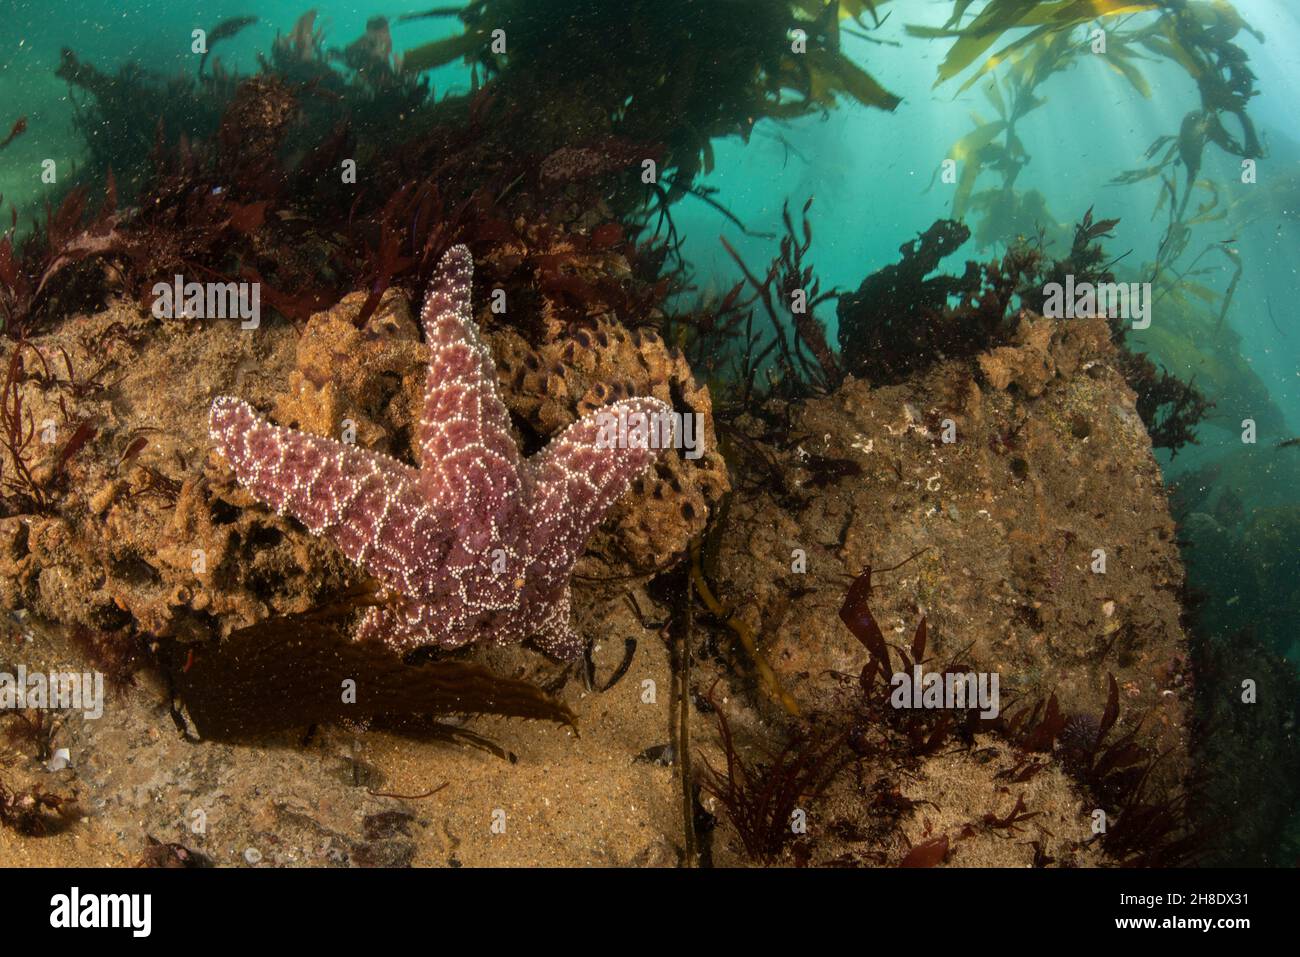 Una estrella de mar púrpura (Pisaster ochraceus) bajo el agua, esta estrella de mar es una gran especie de equinodermo y piedra clave de la bahía de Monterey en California. Foto de stock